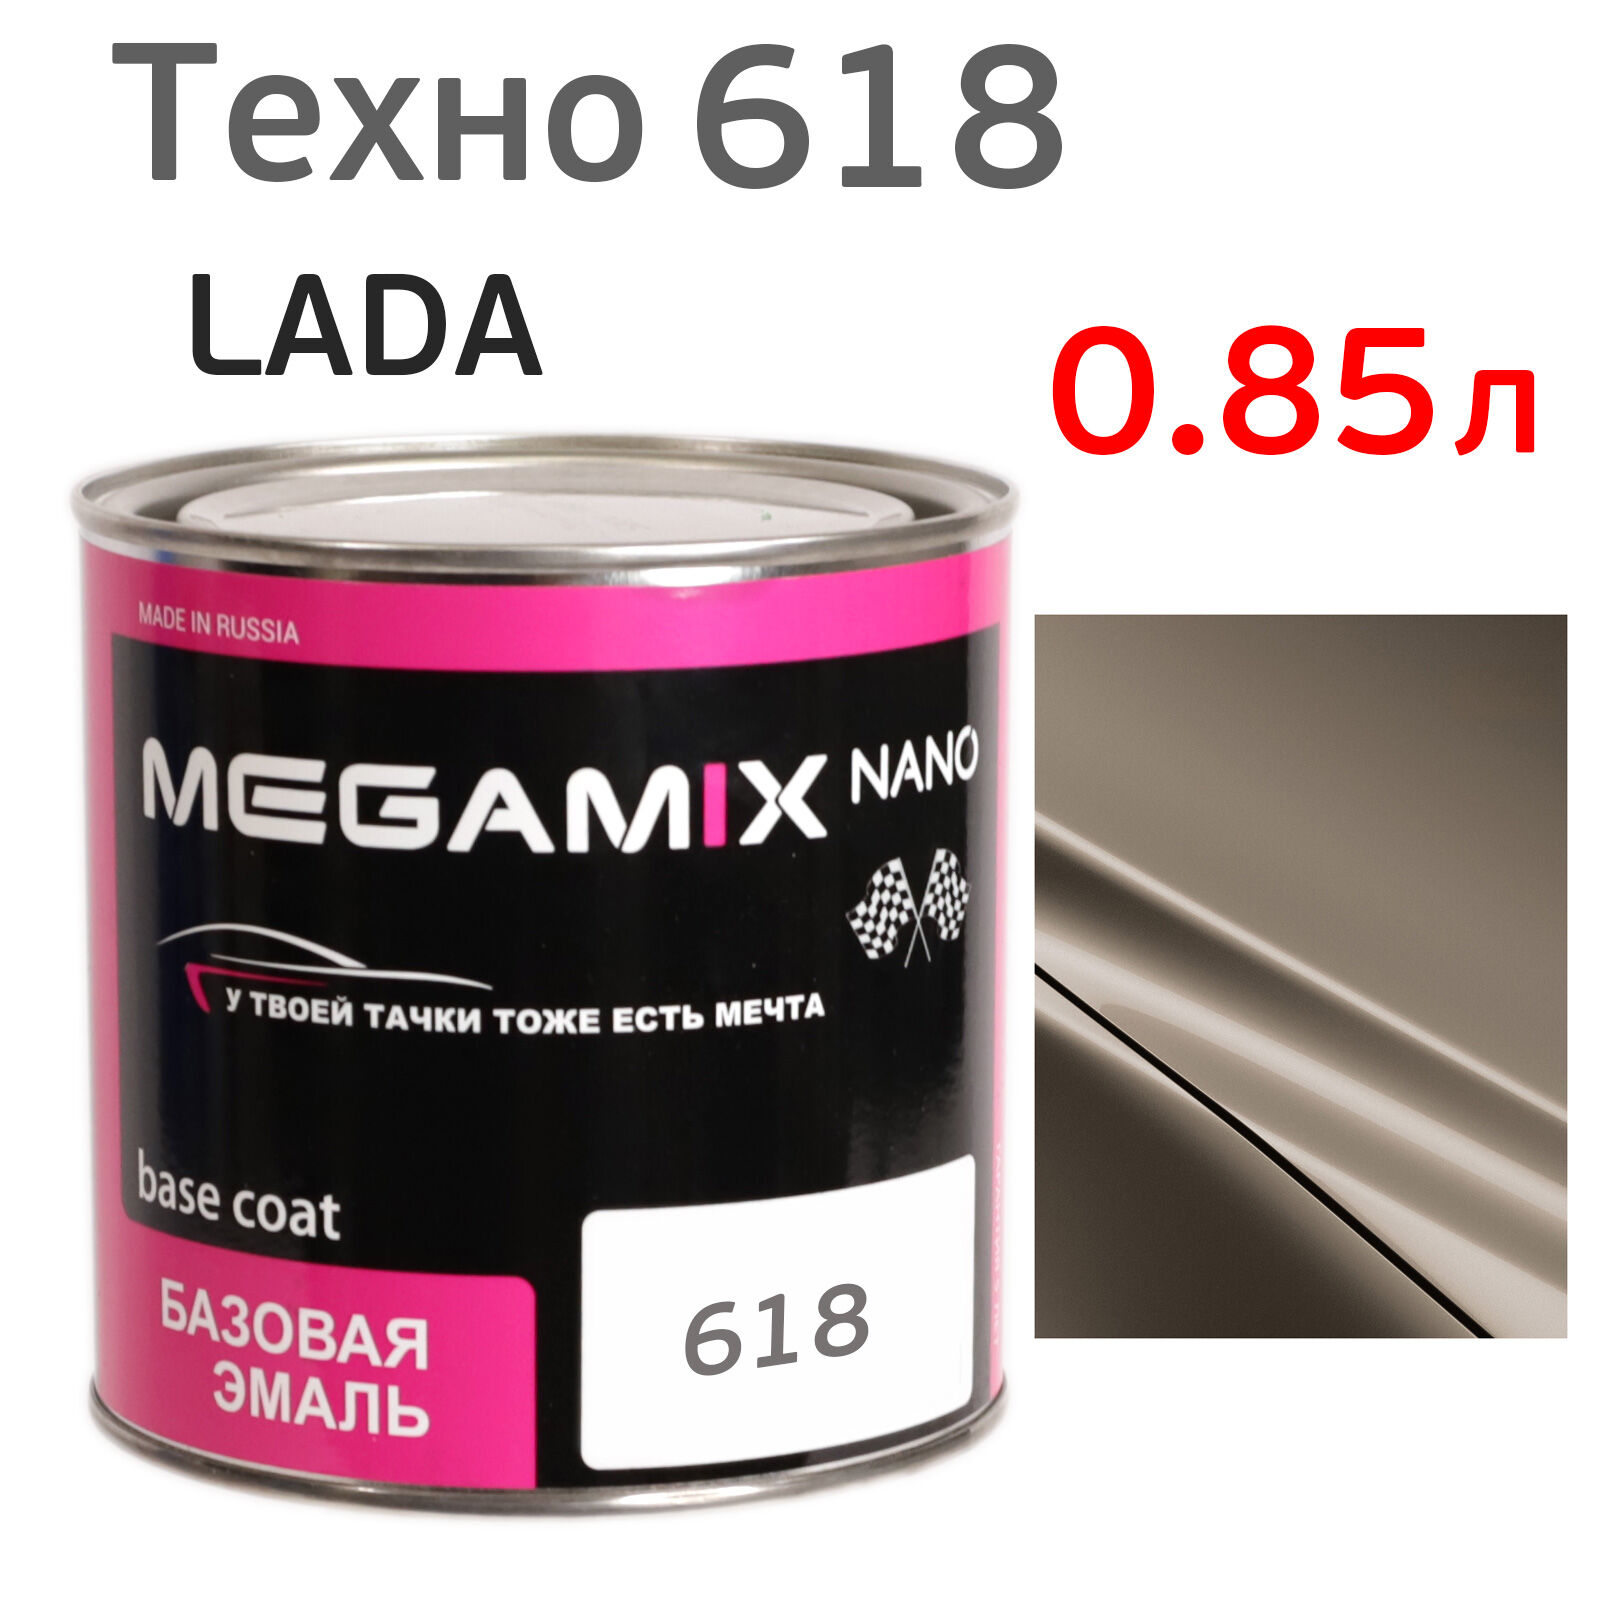 Автоэмаль MegaMIX (0.85л) Lada 618 Техно, металлик, базисная эмаль под лак